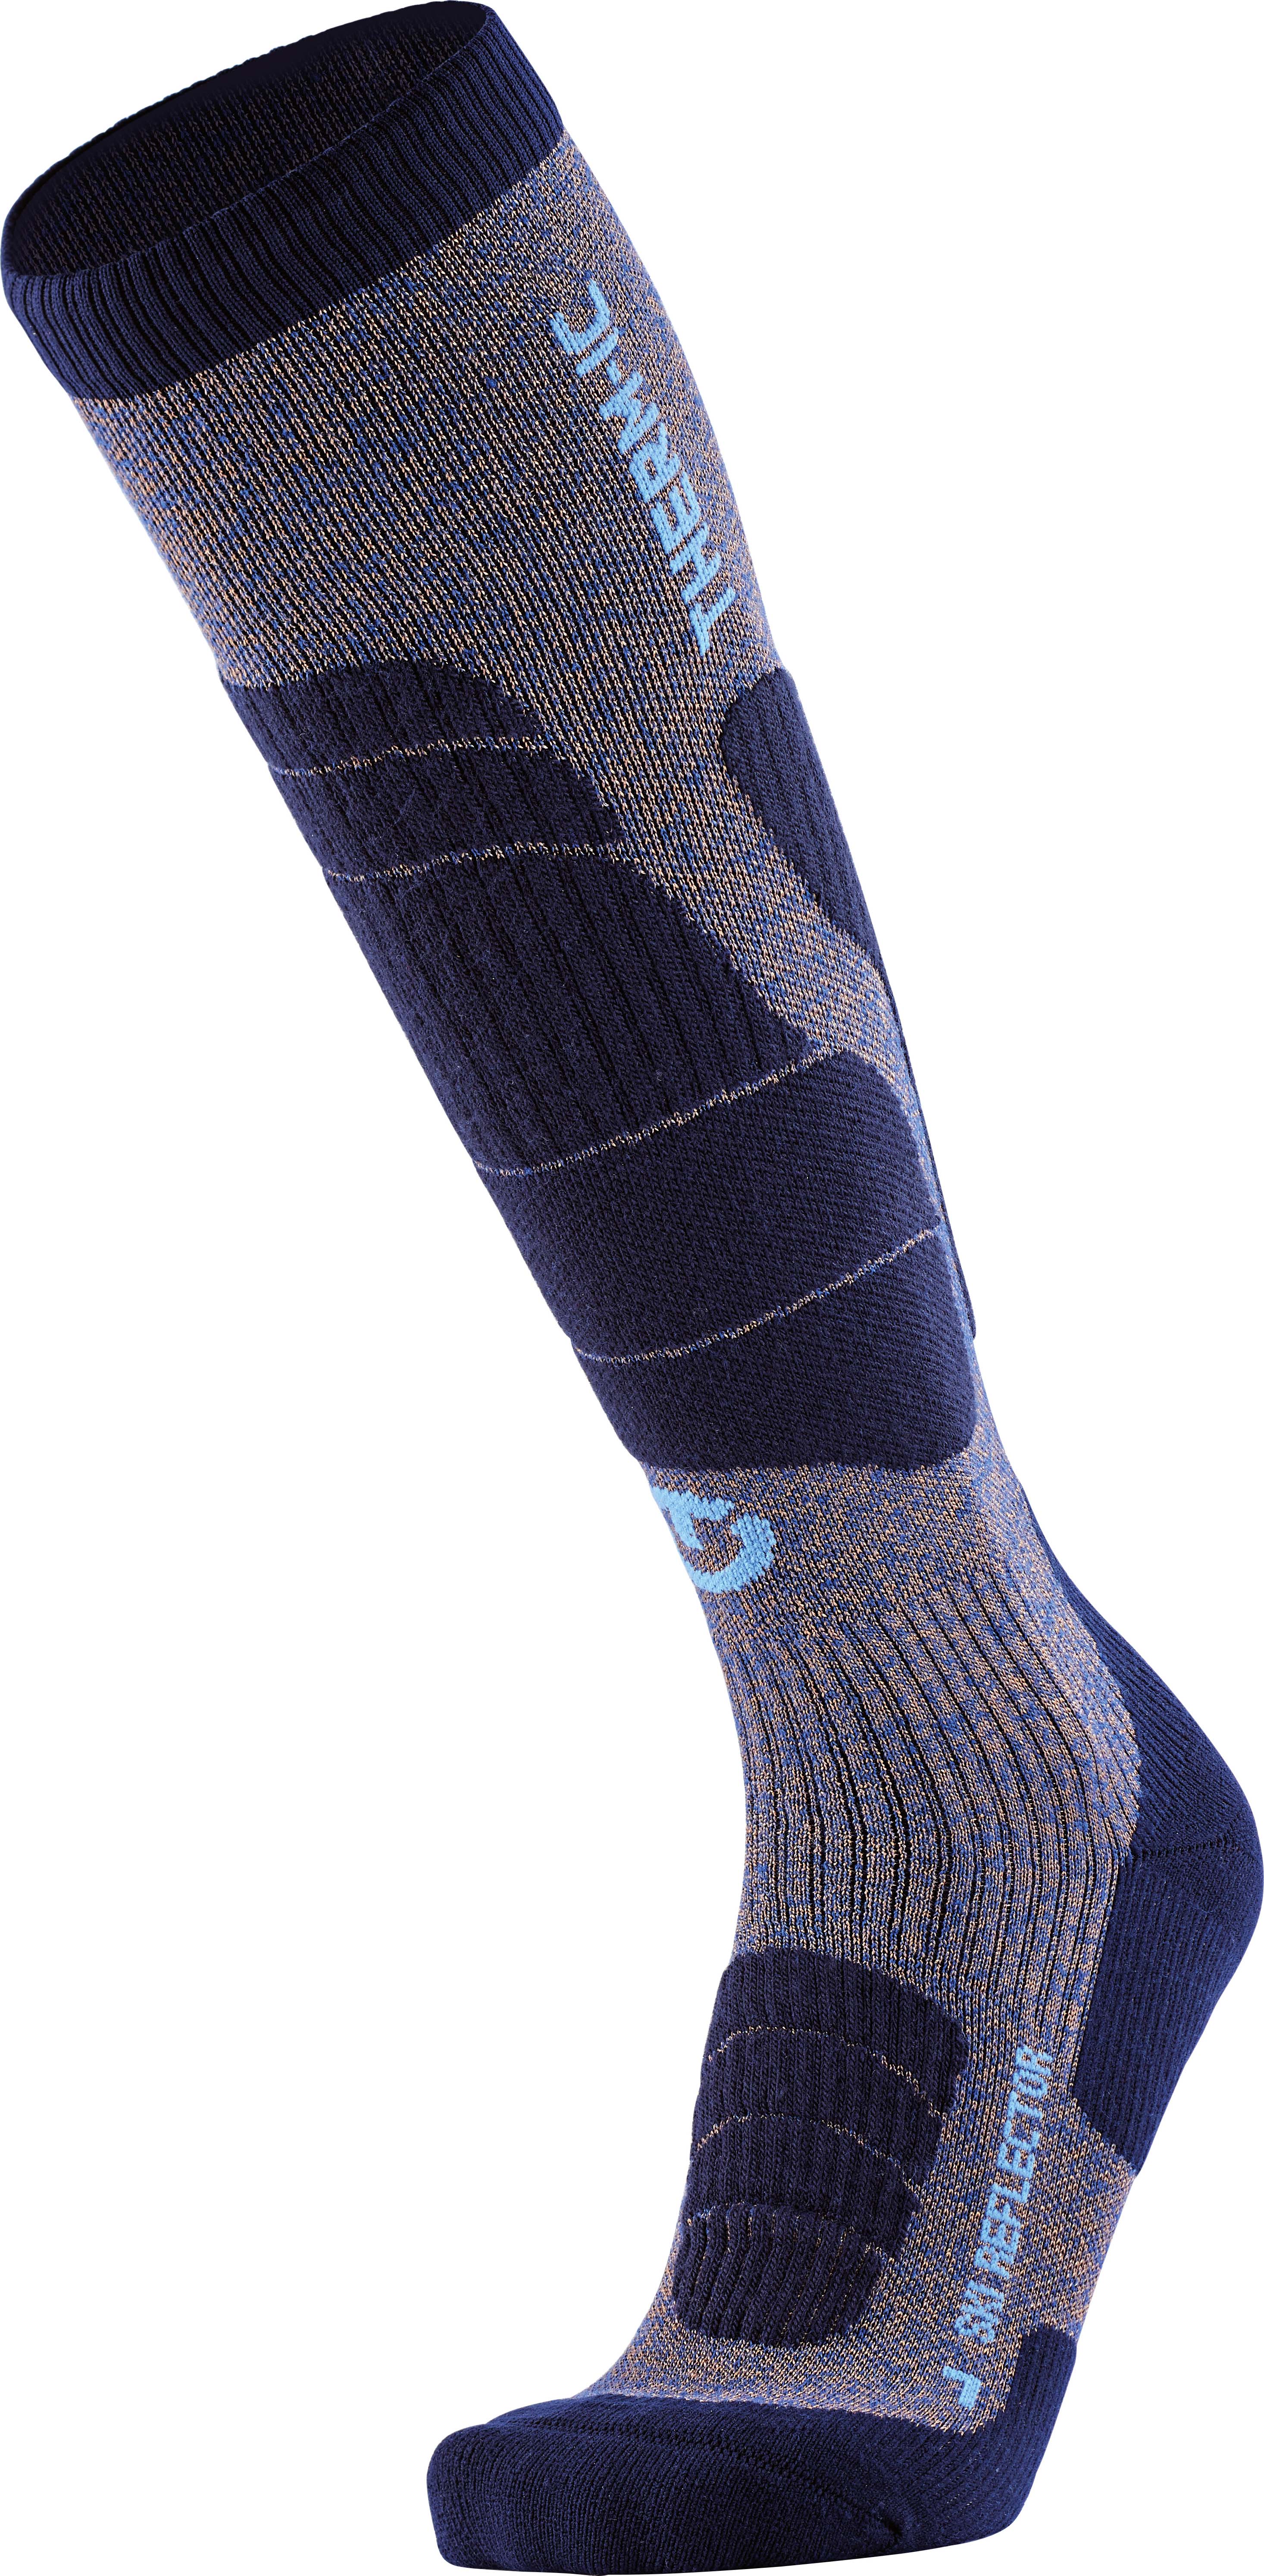 Merino ski socks and reflective fibres